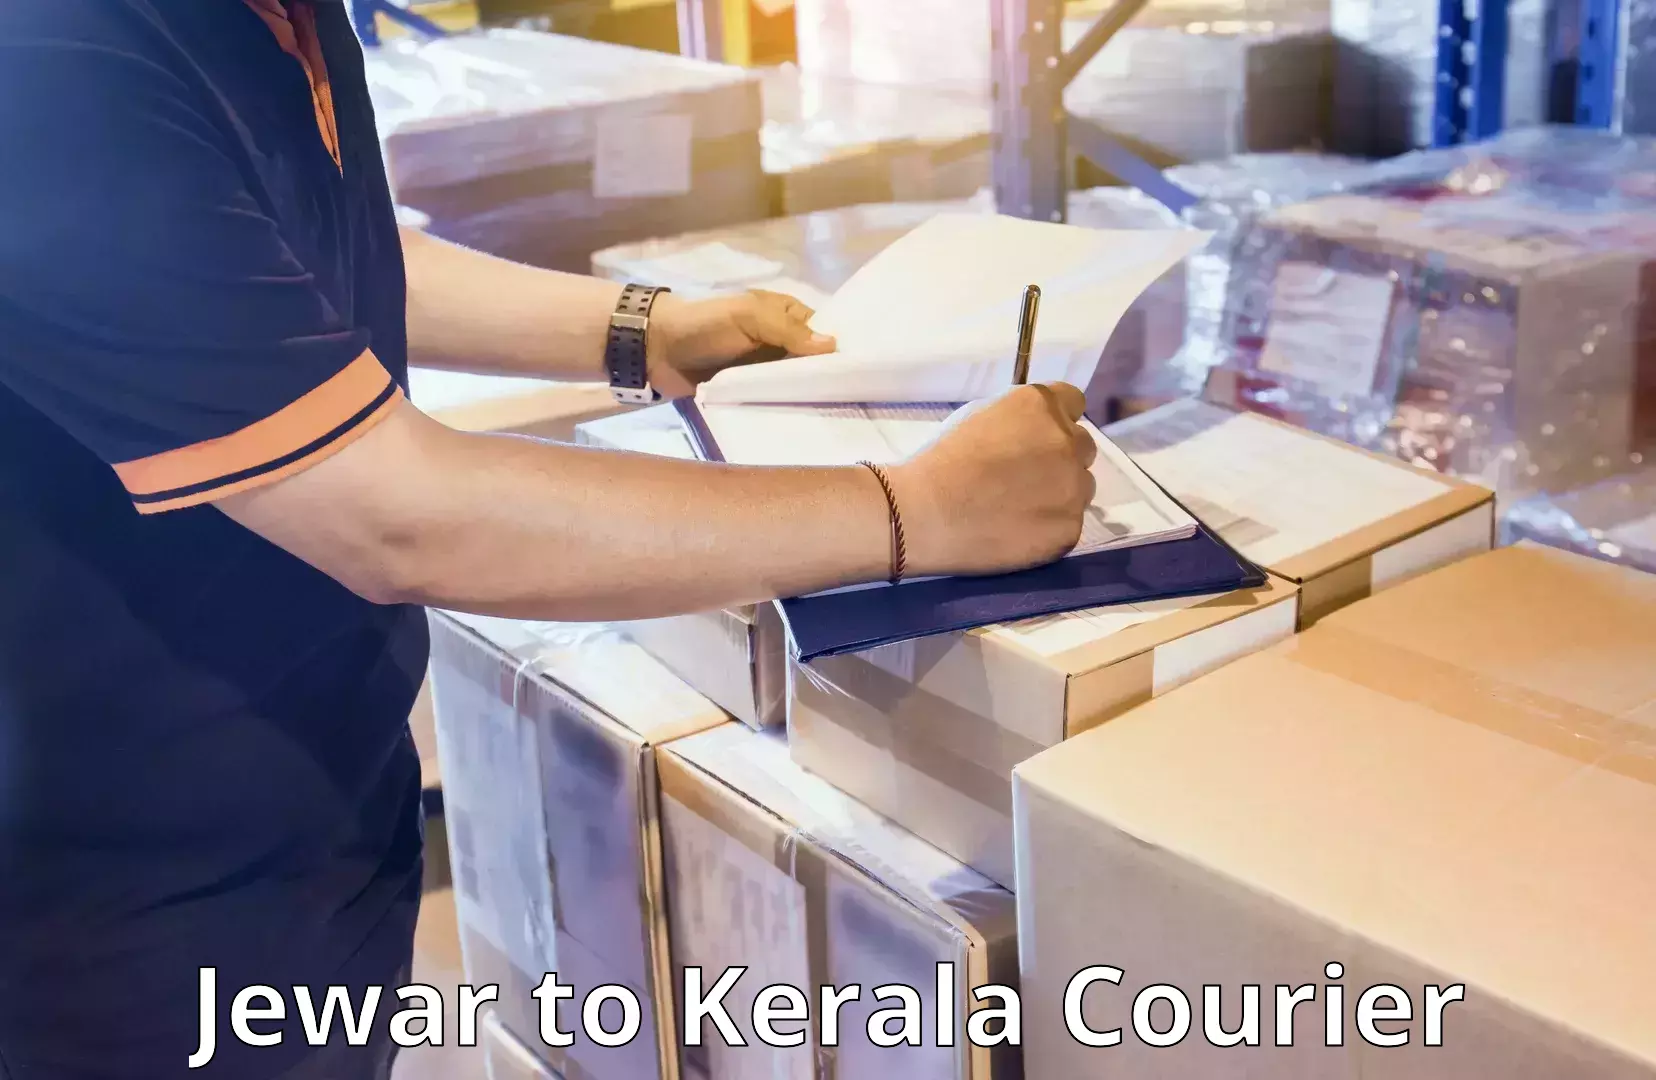 Luggage transport deals Jewar to Kerala